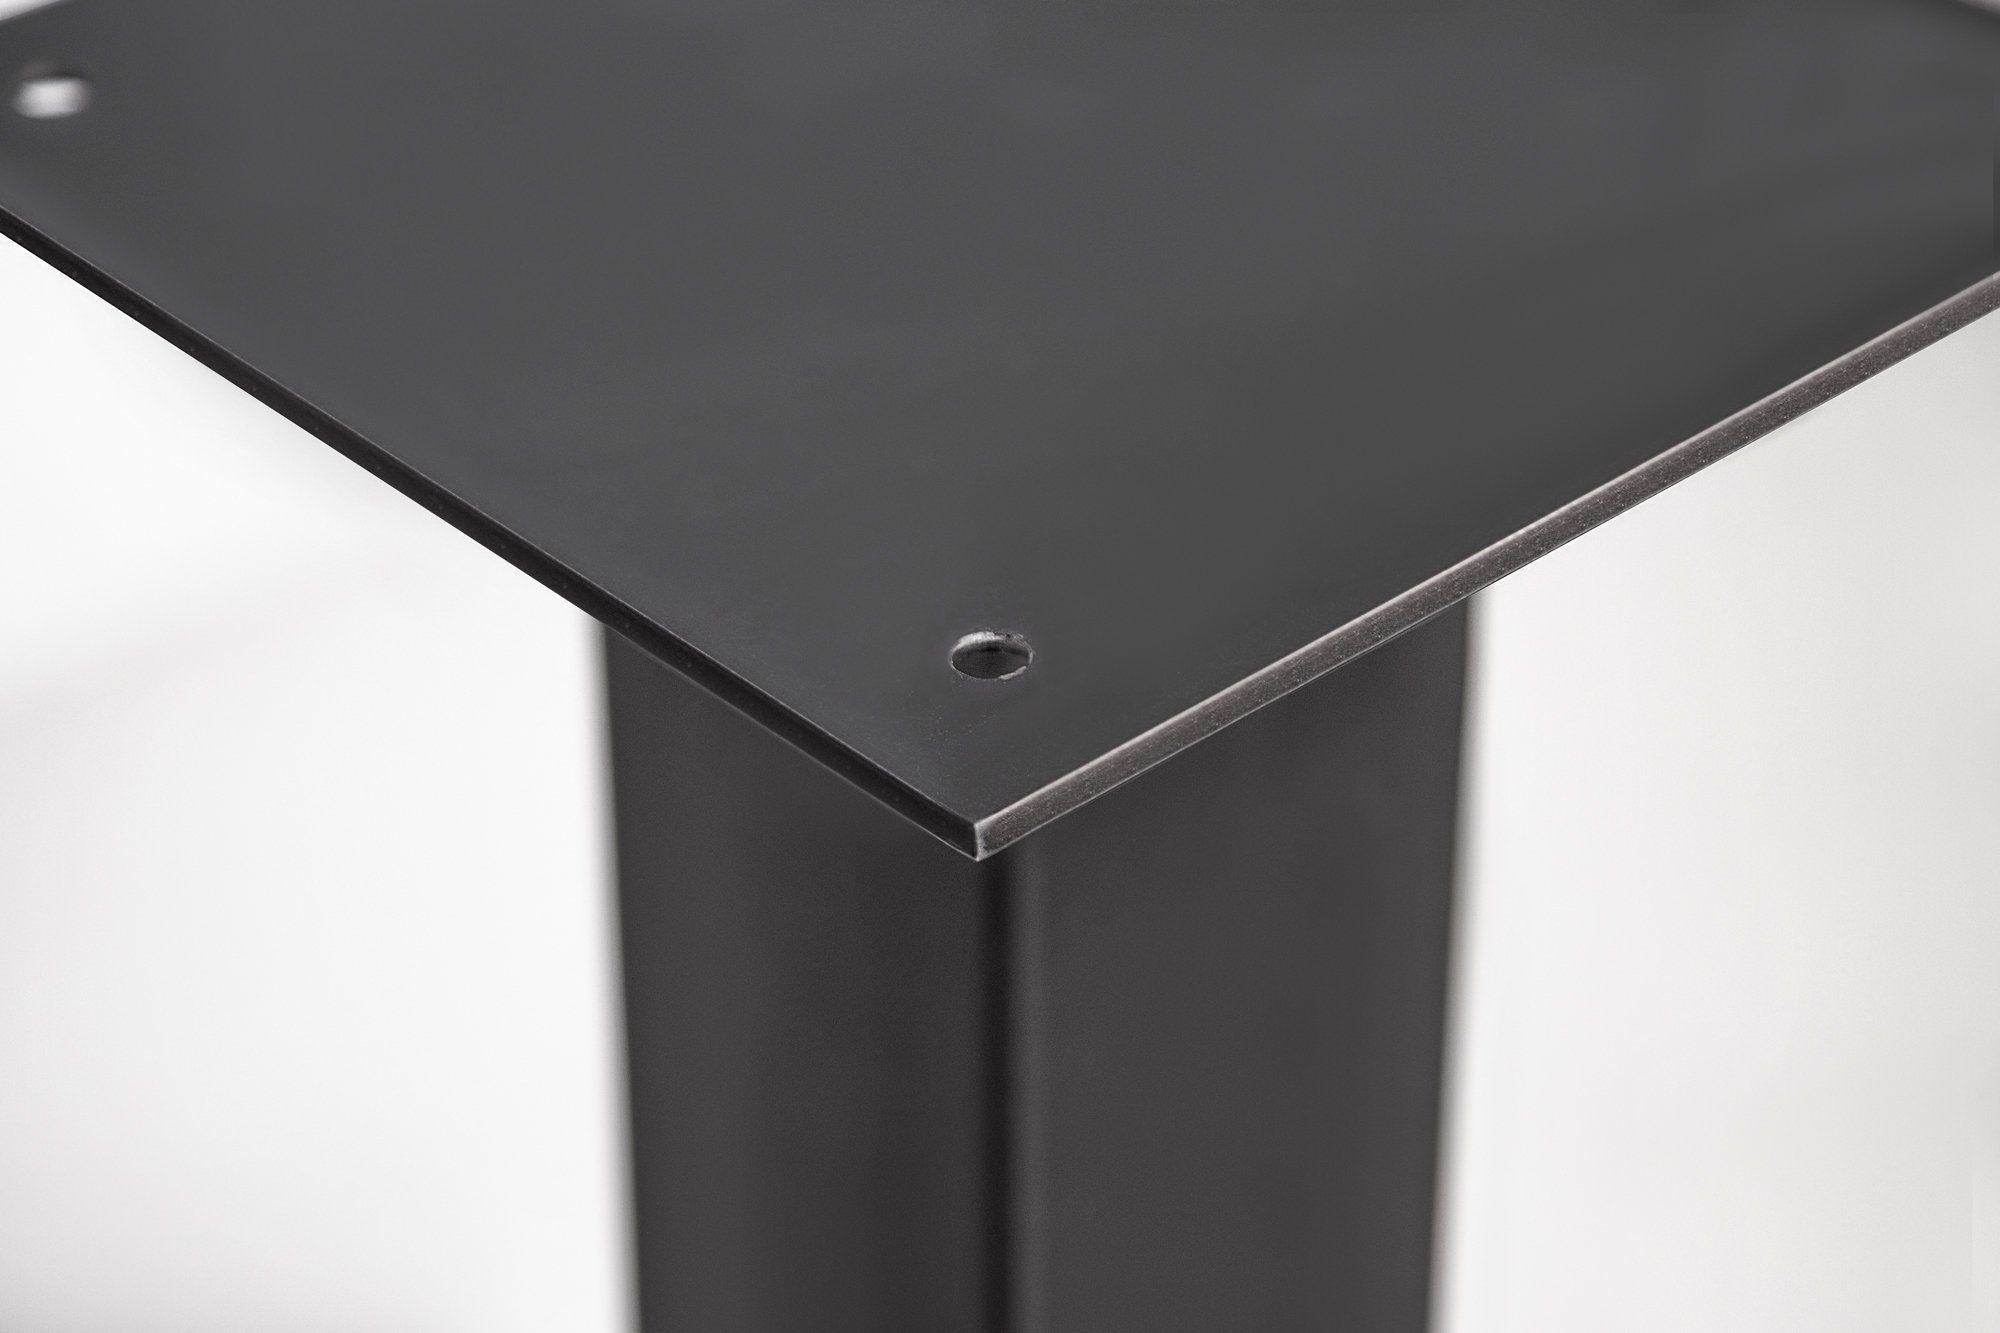 GASTRO Tischgestell, Moebel-Eins Material schwarz für Stahl, Tischgestell Bistrotisch,